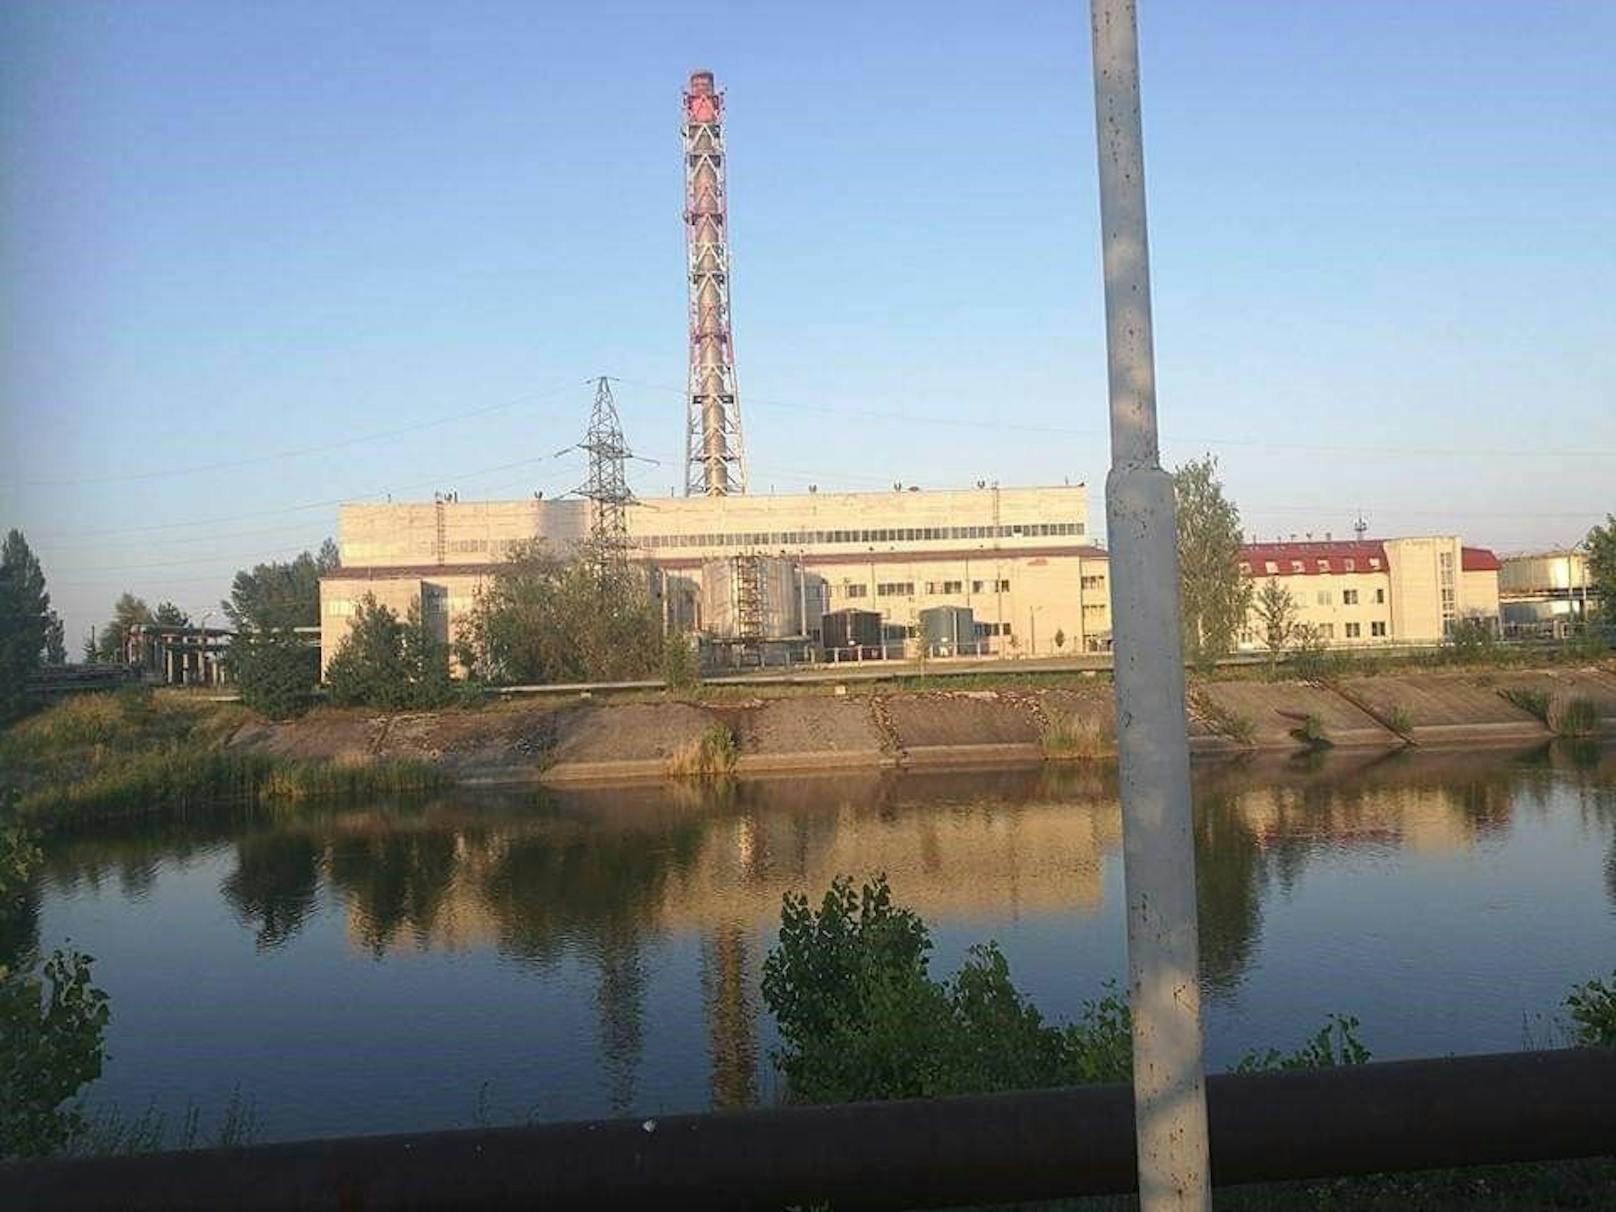 Die Nachrichten um das stillgelegte <a href="https://www.heute.at/s/ukraine-akw-warnt-vor-der-nuklearen-katastrophe-100193883">Atomkraftwerk Tschernobyl</a> werden immer besorgniserregender. Nicht nur, dass sich die Belegschaft vor Ort in russischer...